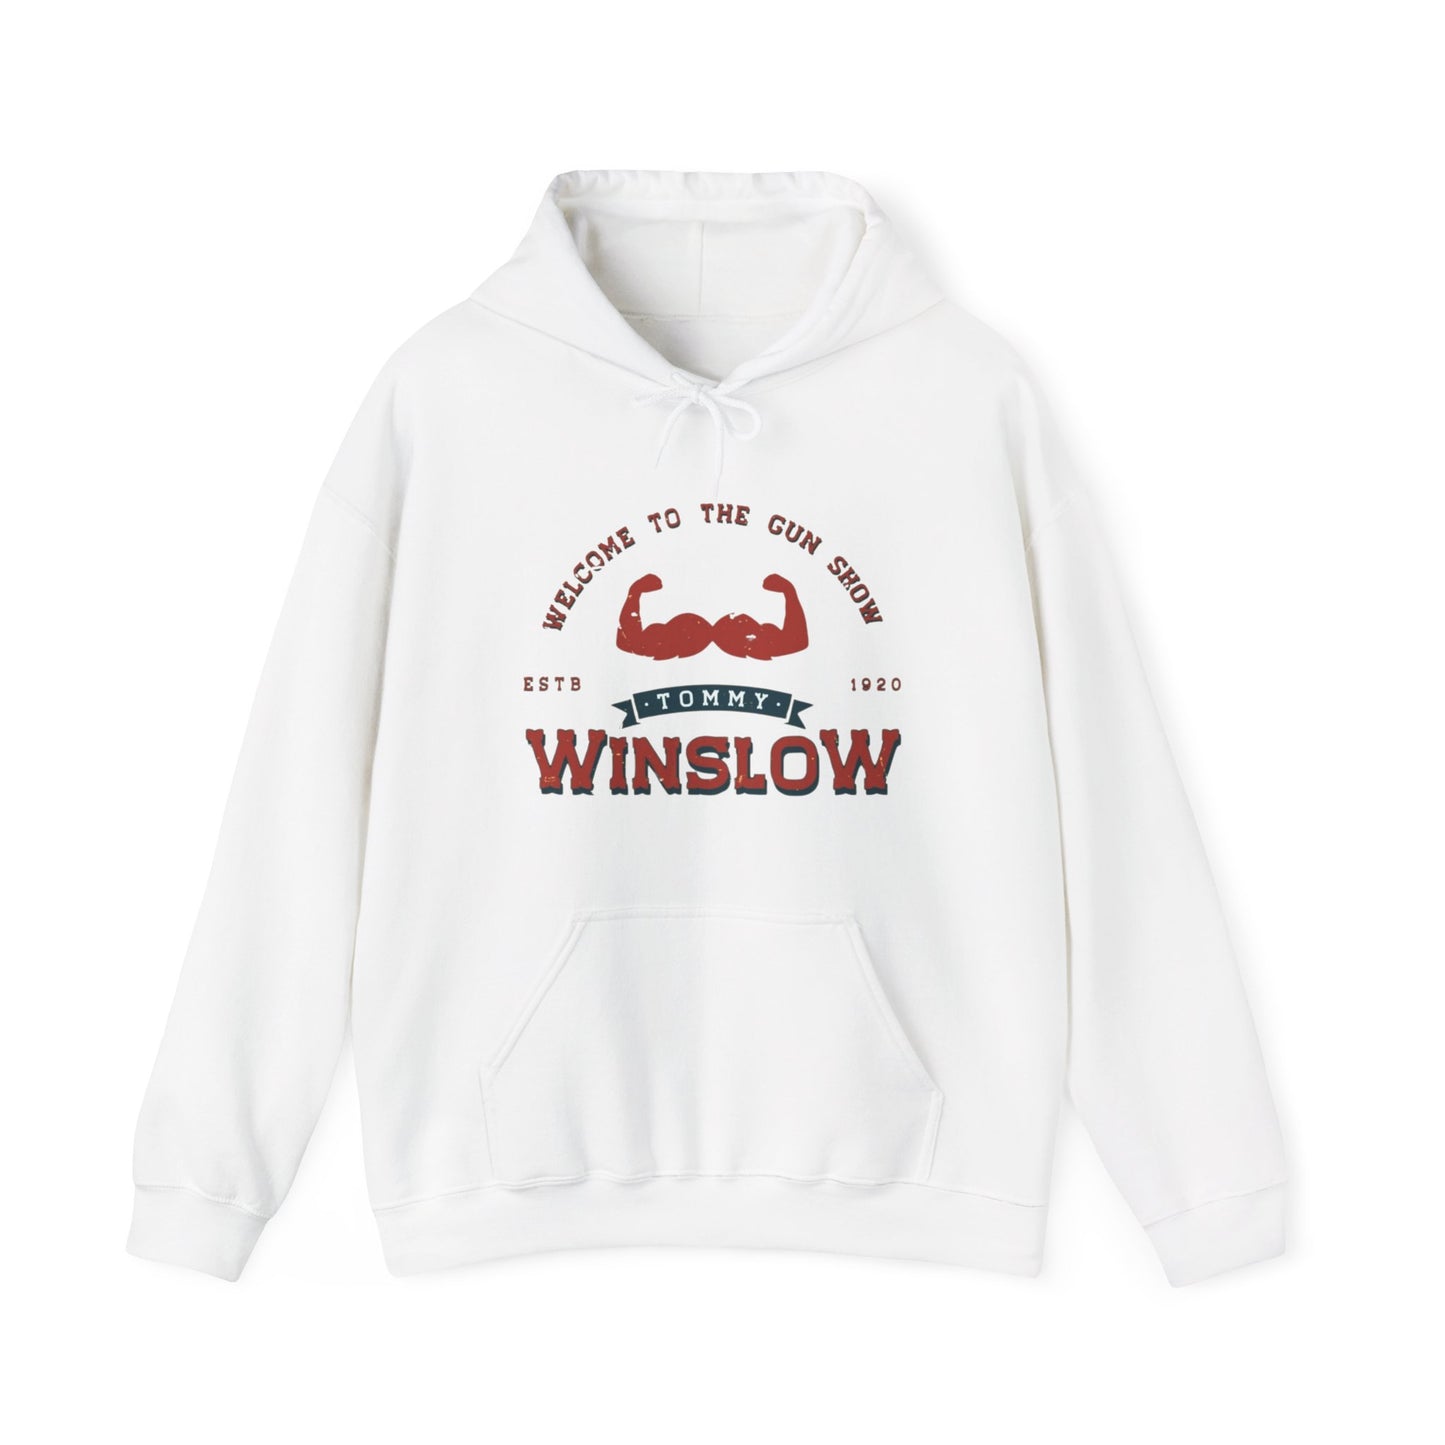 TOMMY "THE GUN" WINSLOW - Hooded Sweatshirt